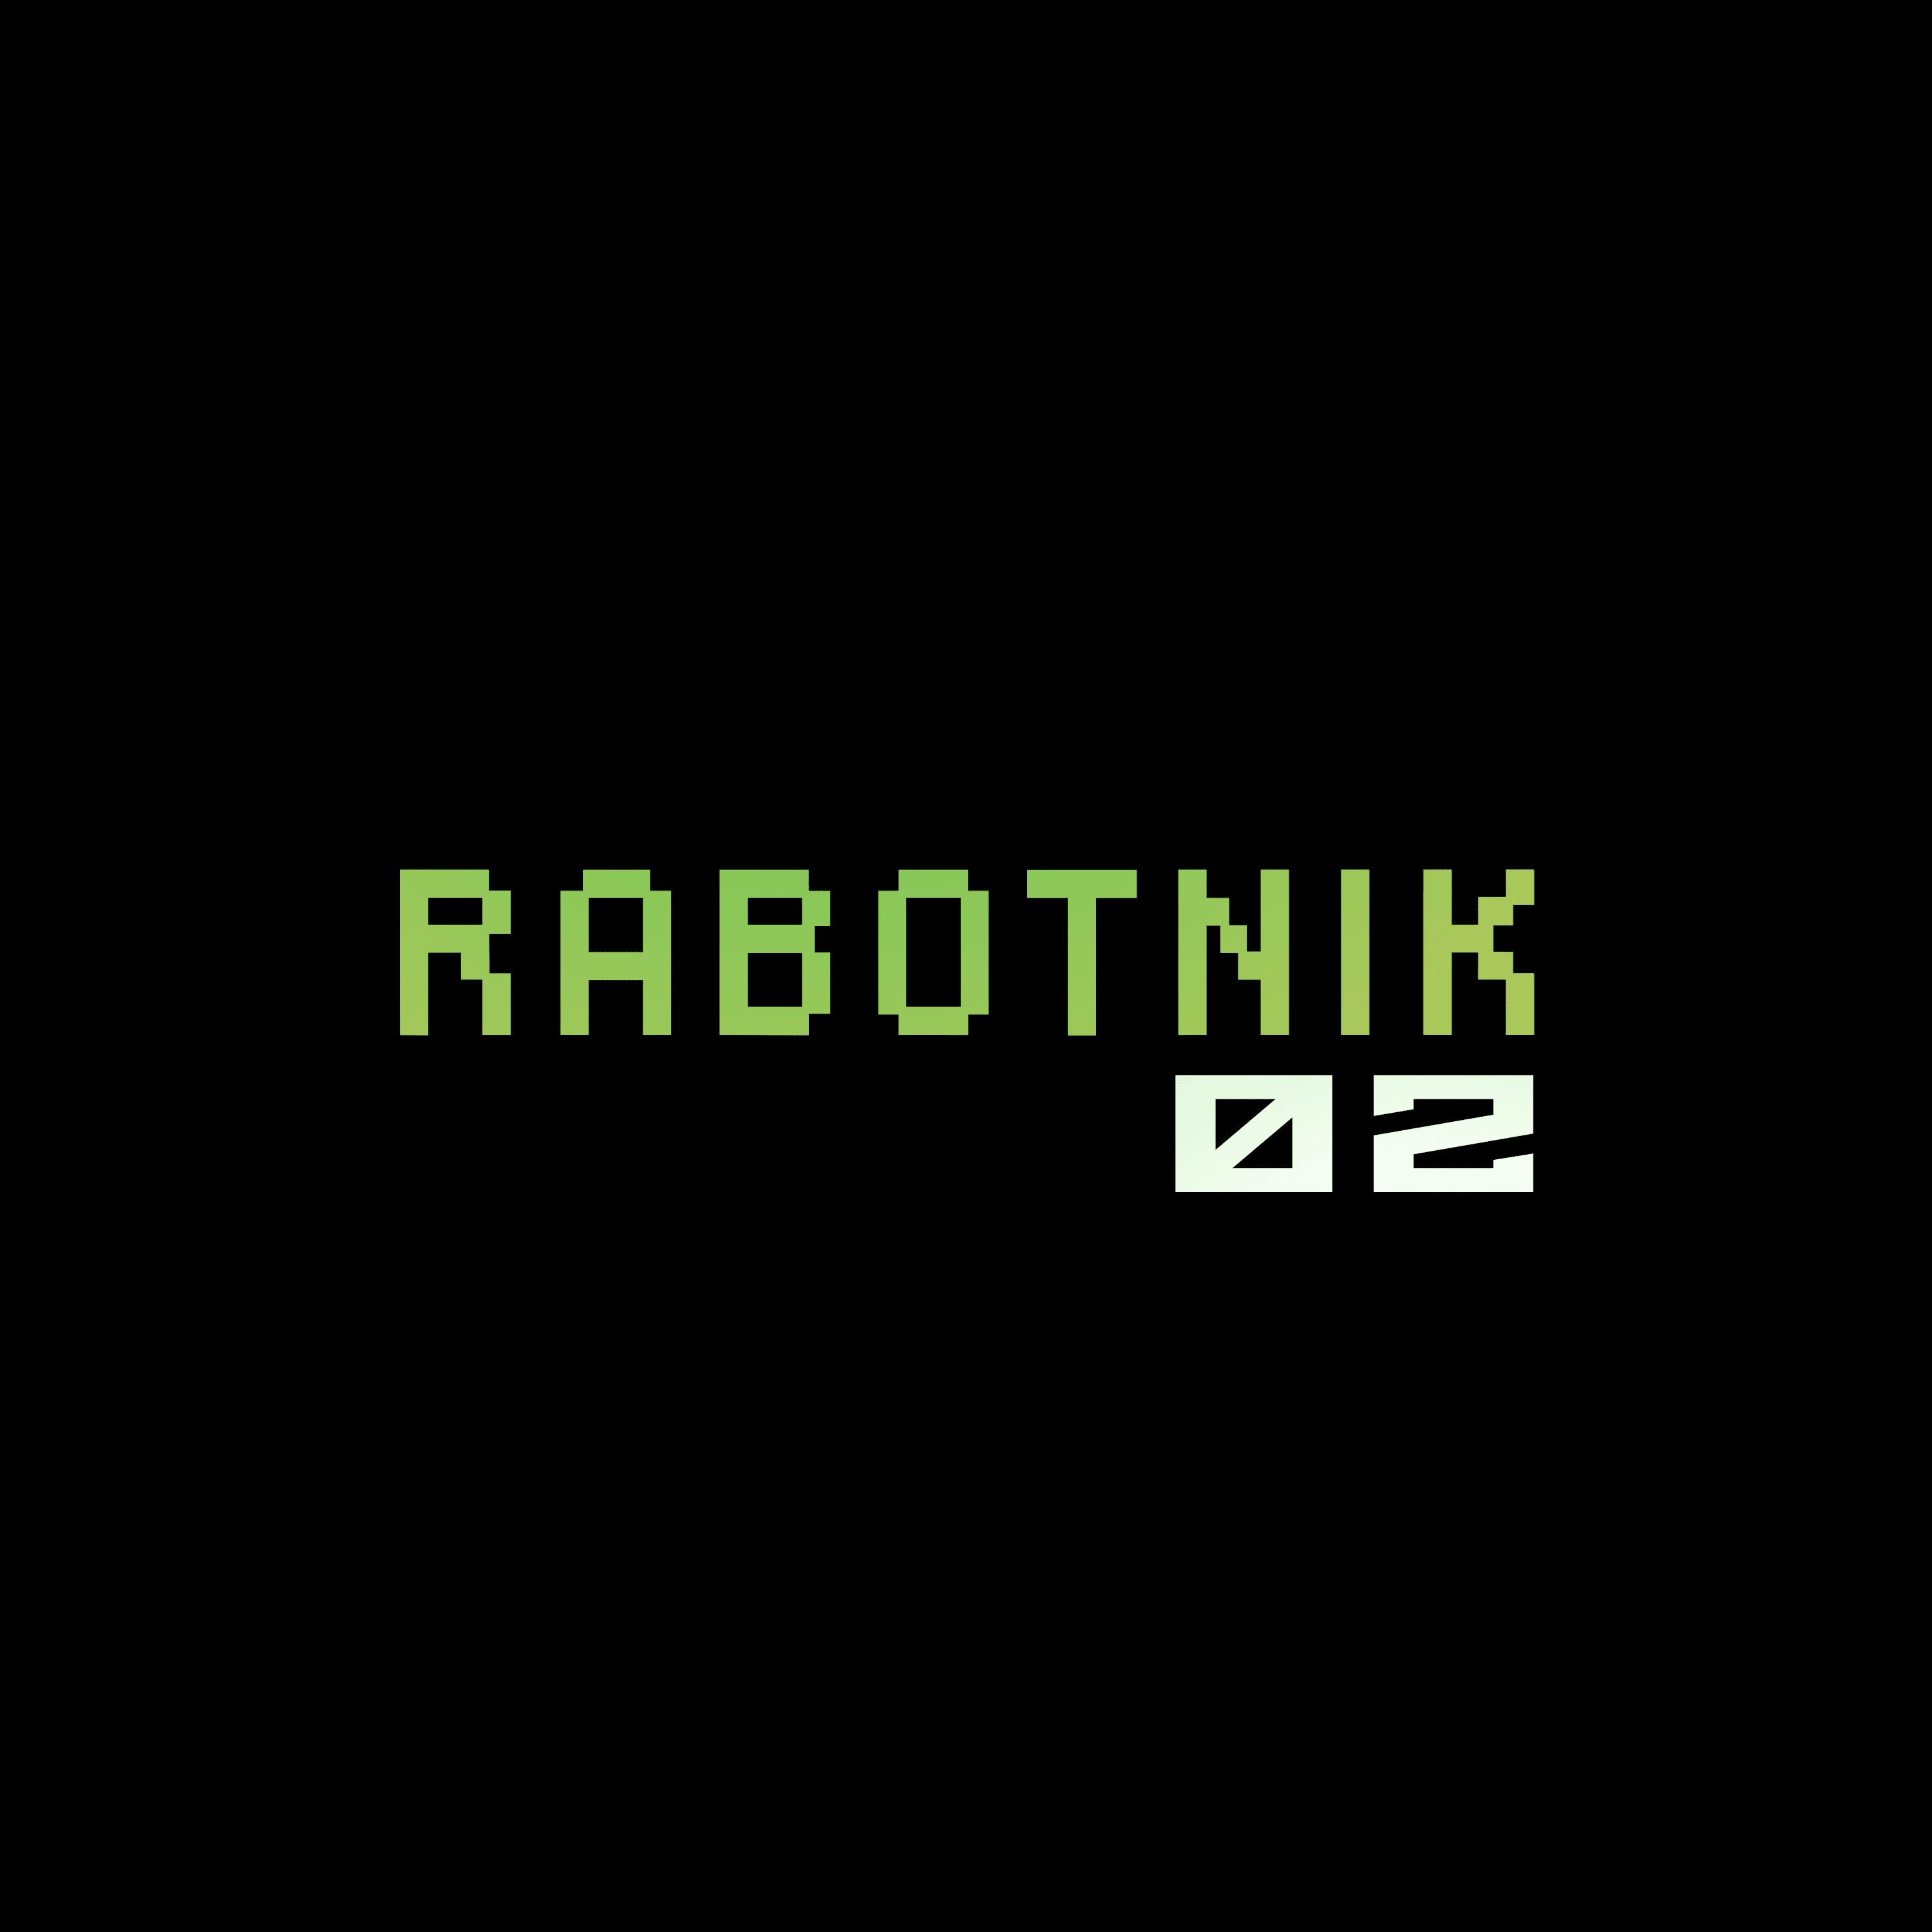 Rabotnik02 banner